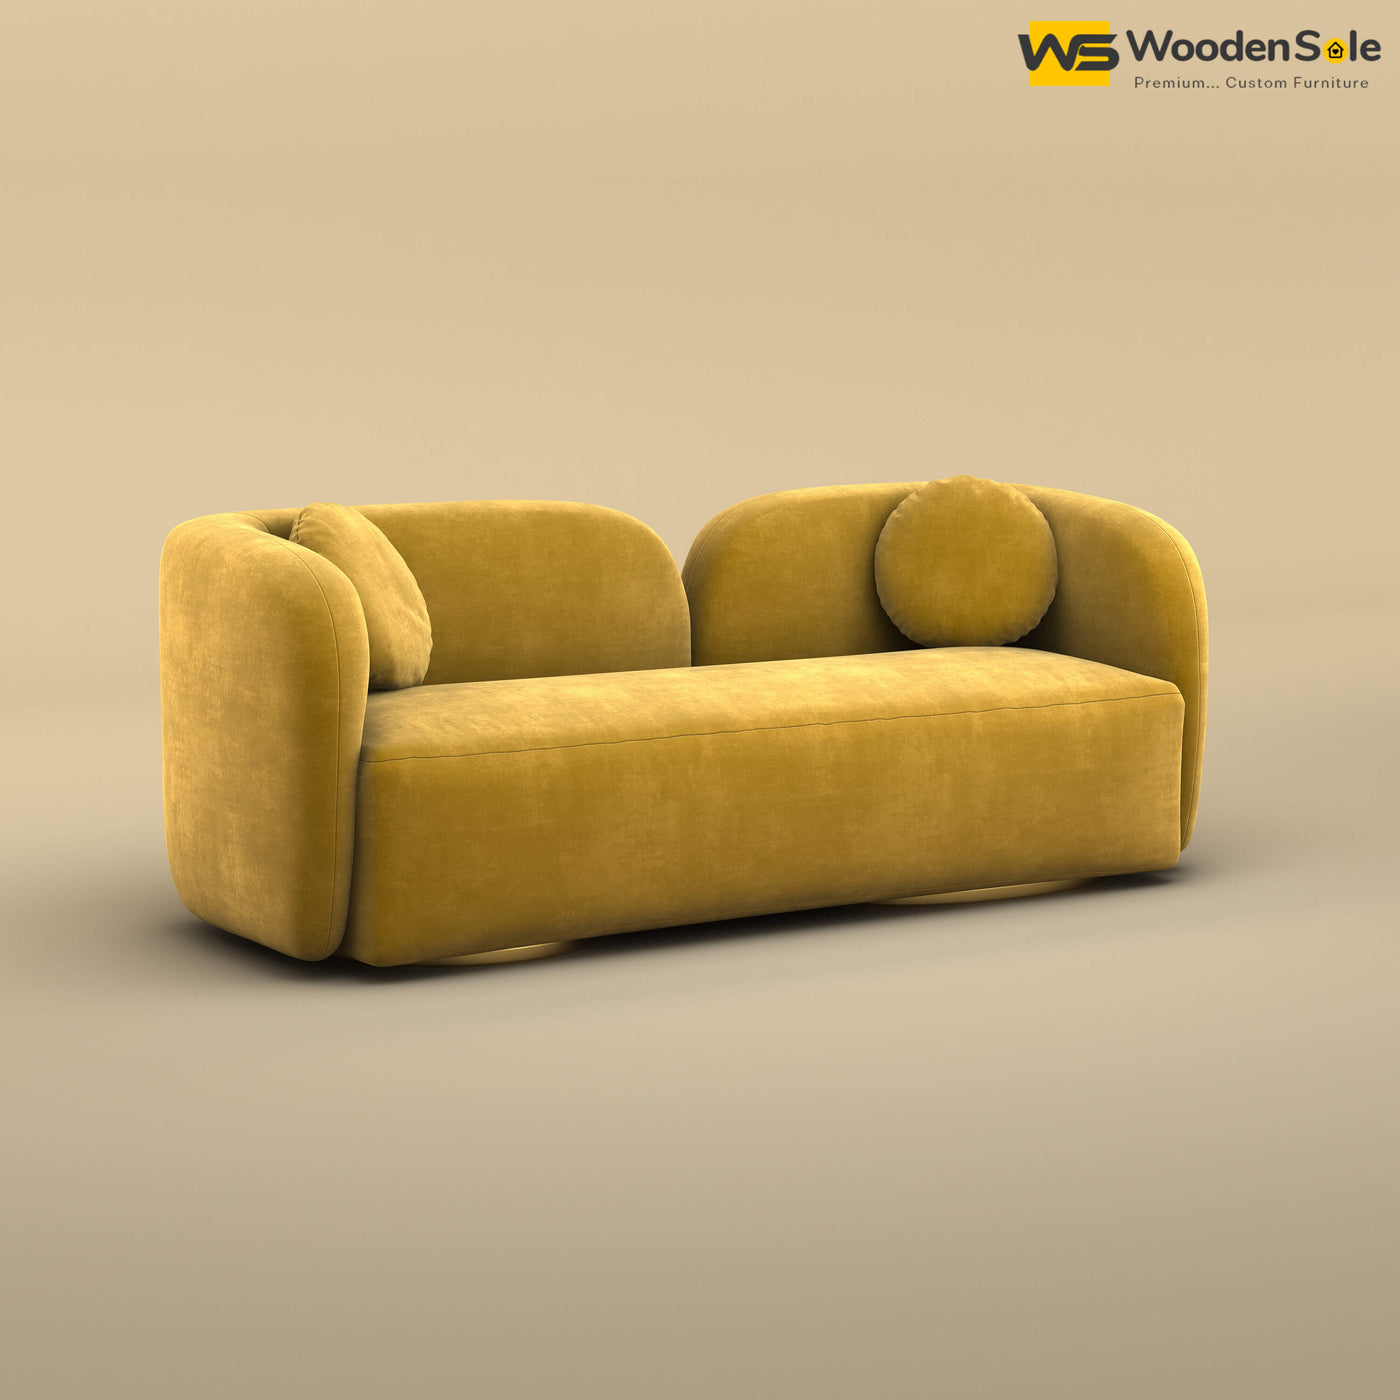 Oslo 3 Seater Interior Sofa (Velvet, Mustard Yellow)